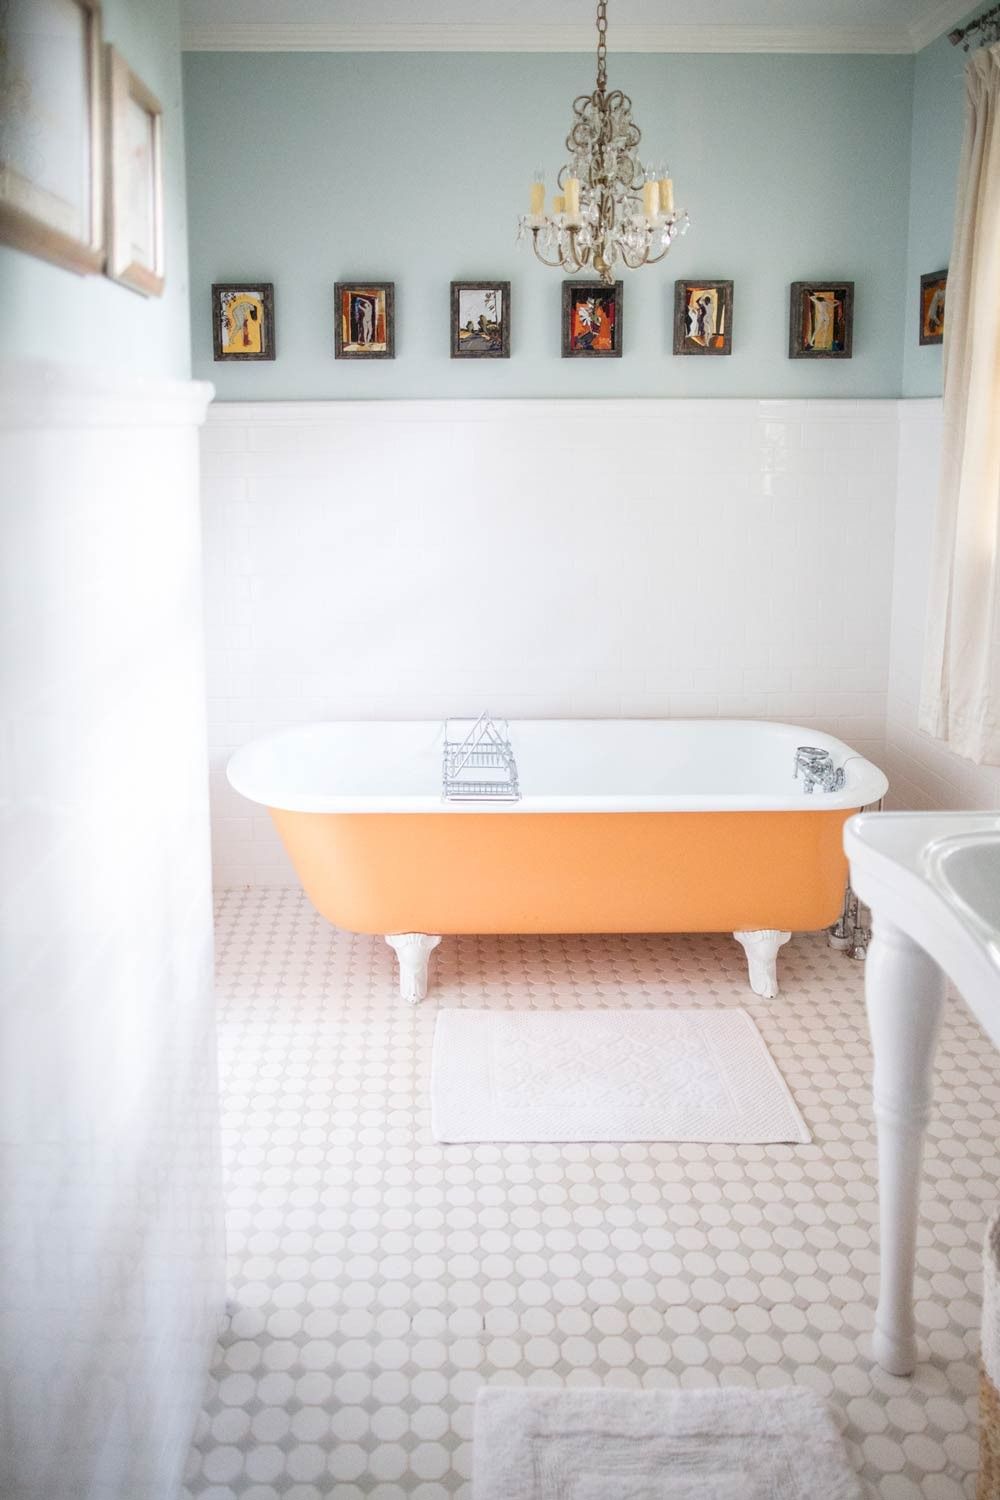 Cho căn phòng tắm gia đình thêm phần rực rỡ với điểm nhấn là chiếc bồn tắm đầy màu sắc - Ảnh 7.